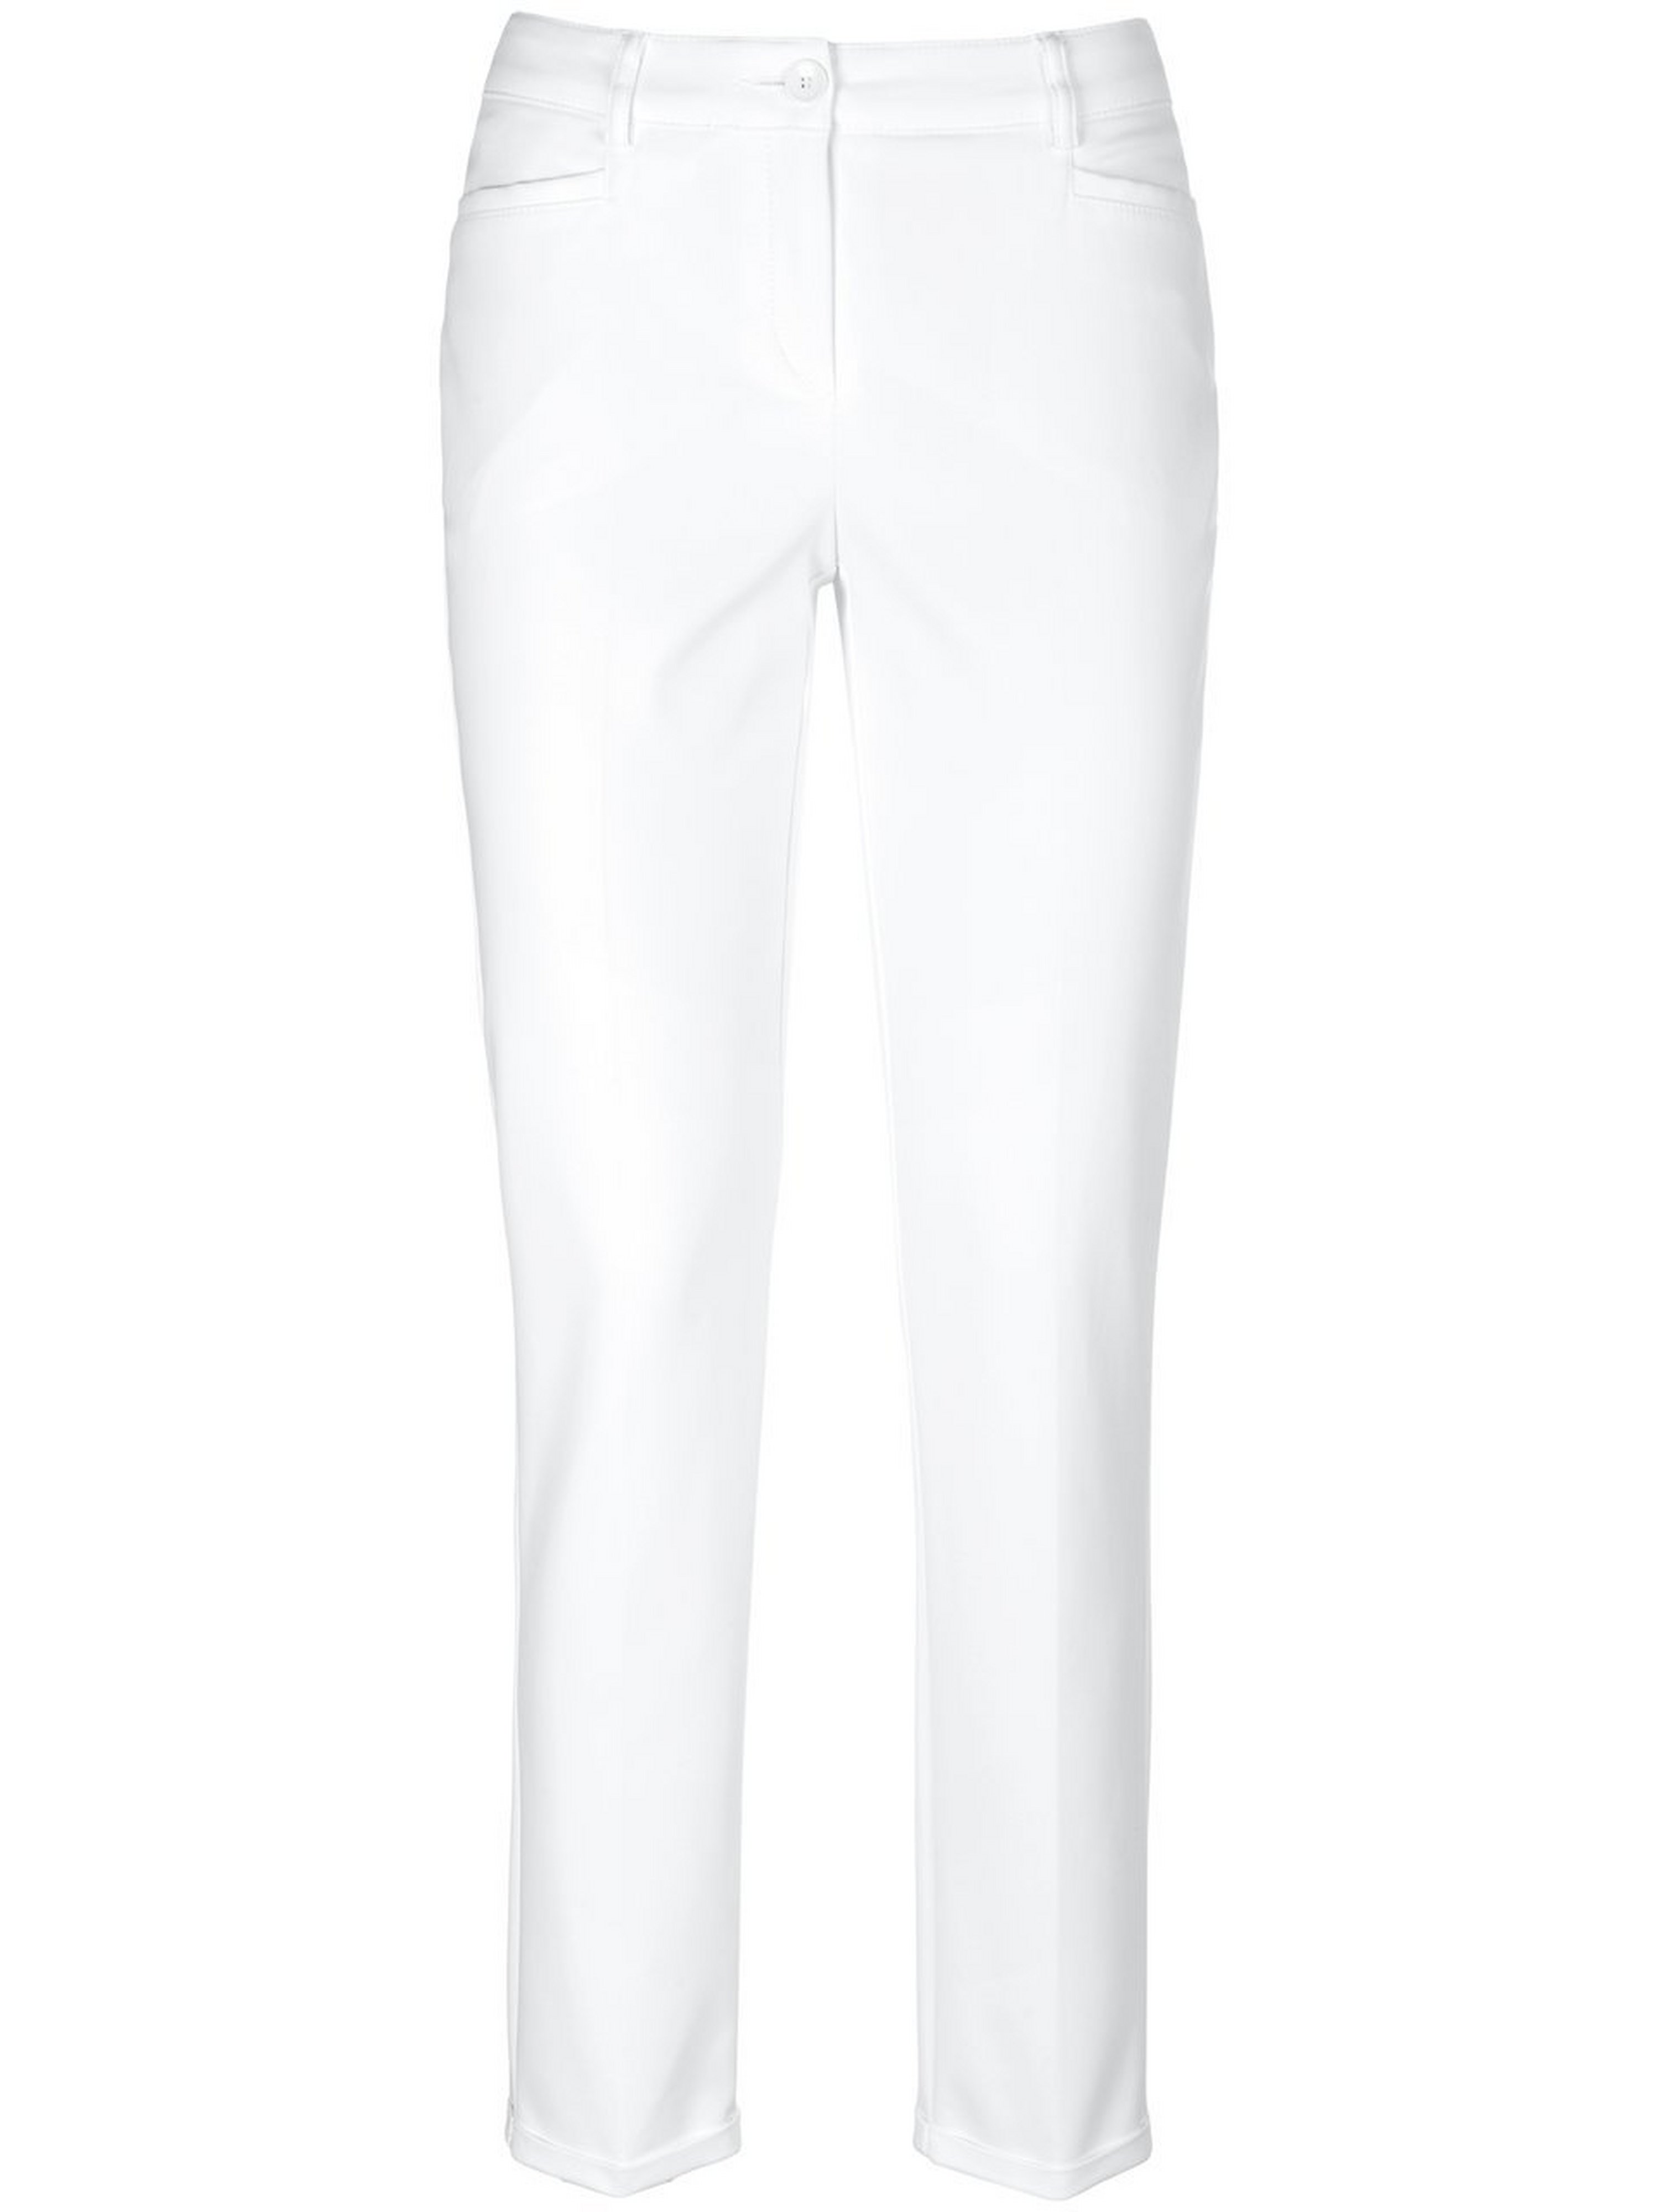 Le pantalon longueur chevilles  Fadenmeister Berlin blanc taille 42